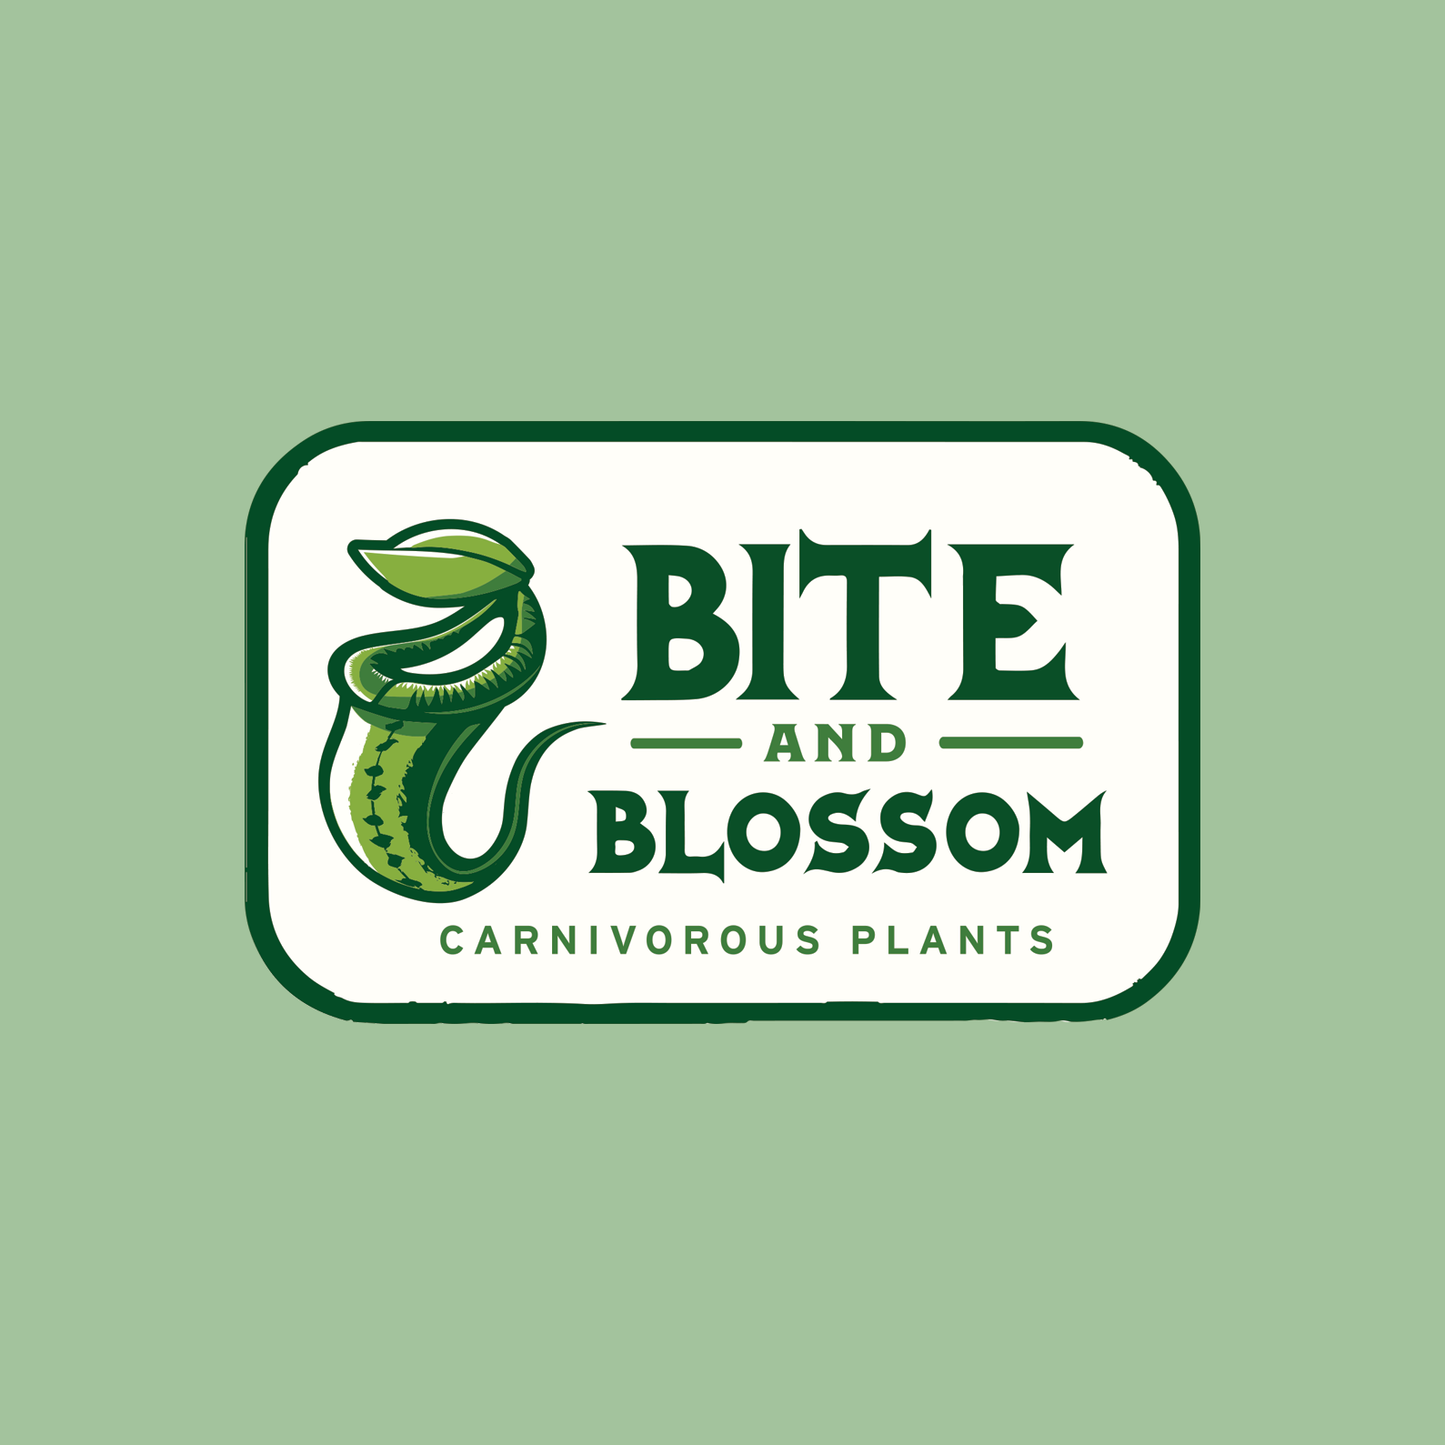 Bite and Blossom